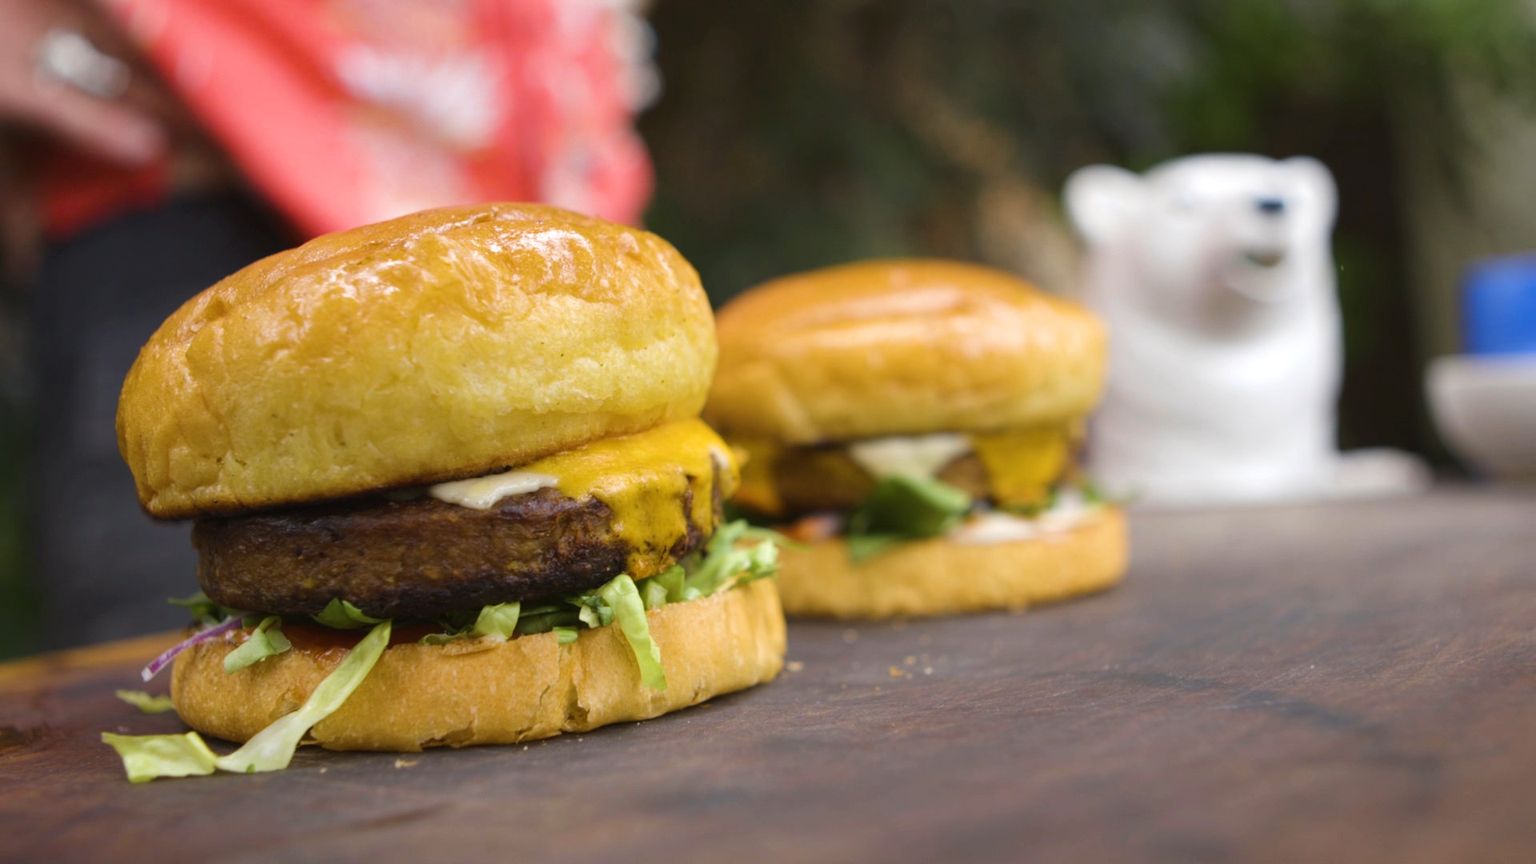 Põllumehed soovivad, et keelaks vegantoodete nimetamise burgeriteks ja vorstideks, sest nende sõnul eksitab see tarbijaid uskuma, et need sisaldavad liha. Pildil vegeburger.